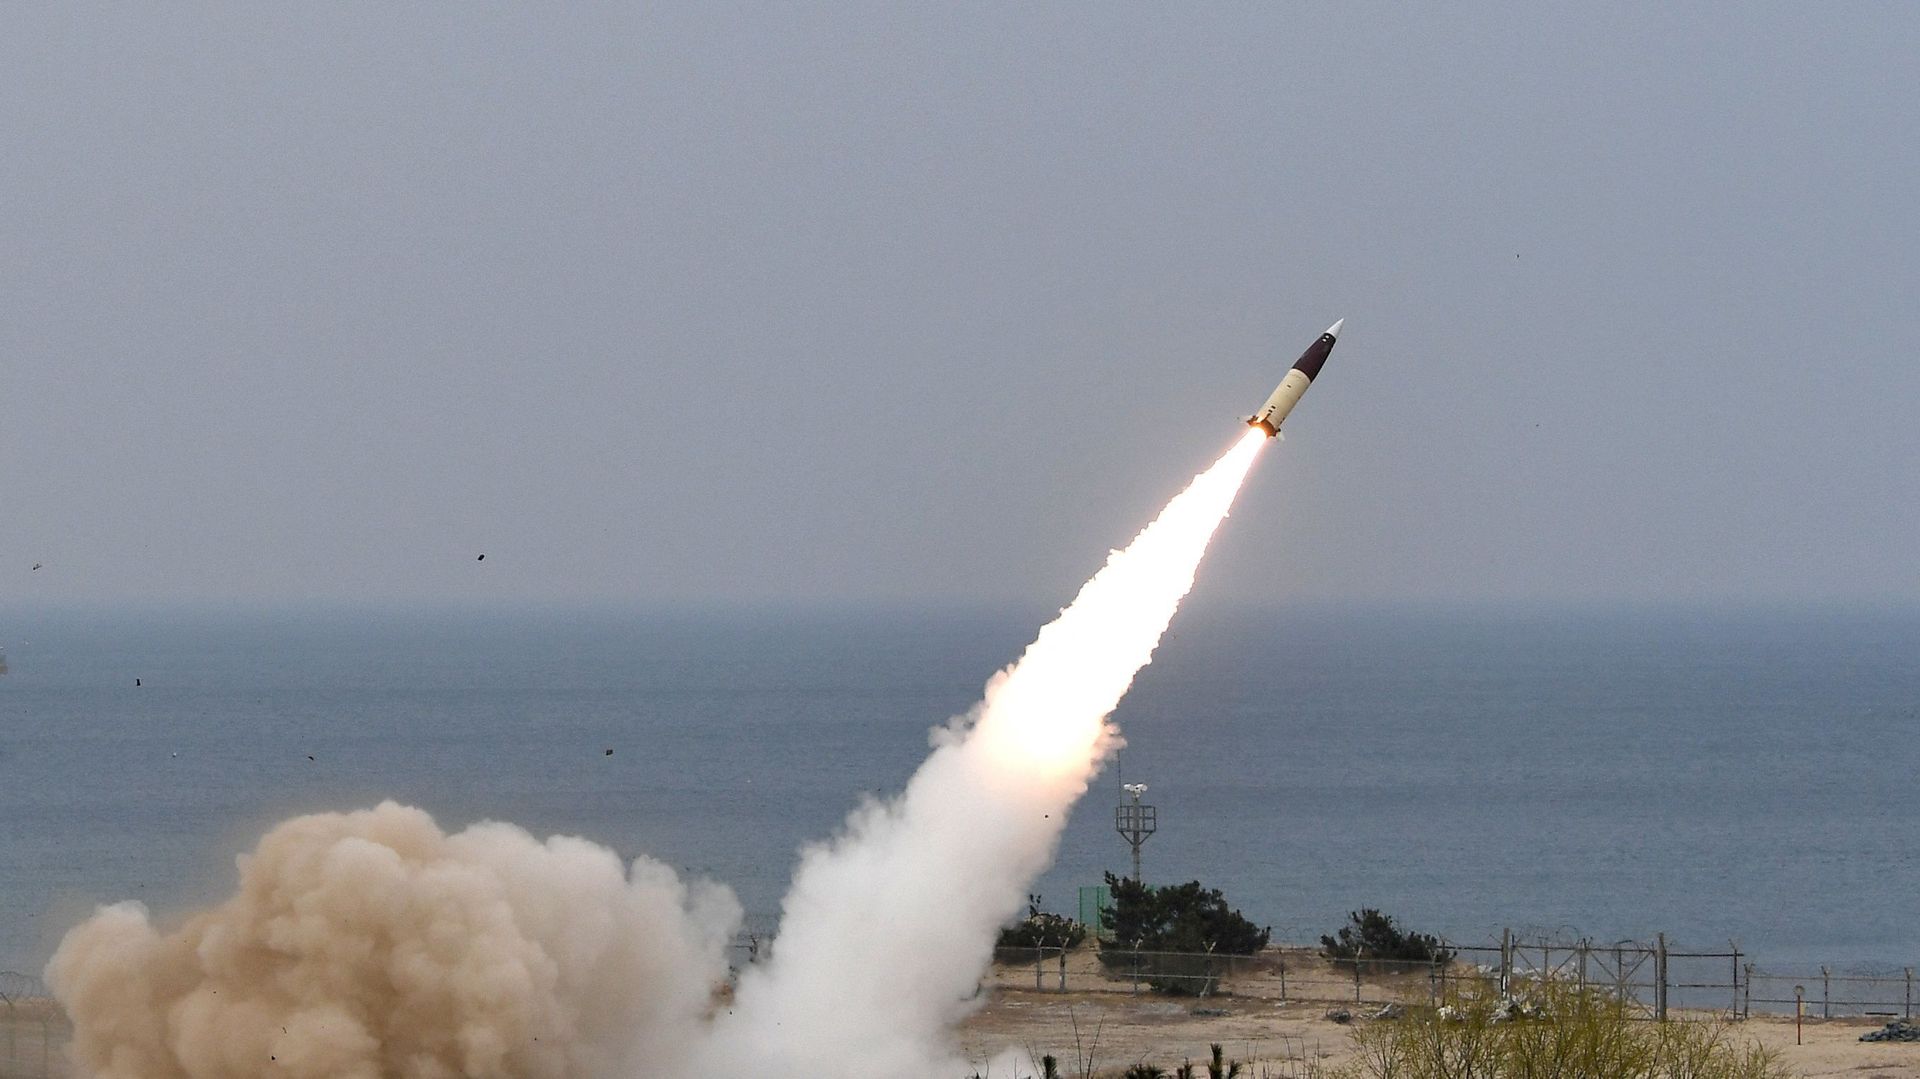 La Corée du Nord balance deux missiles balistiques